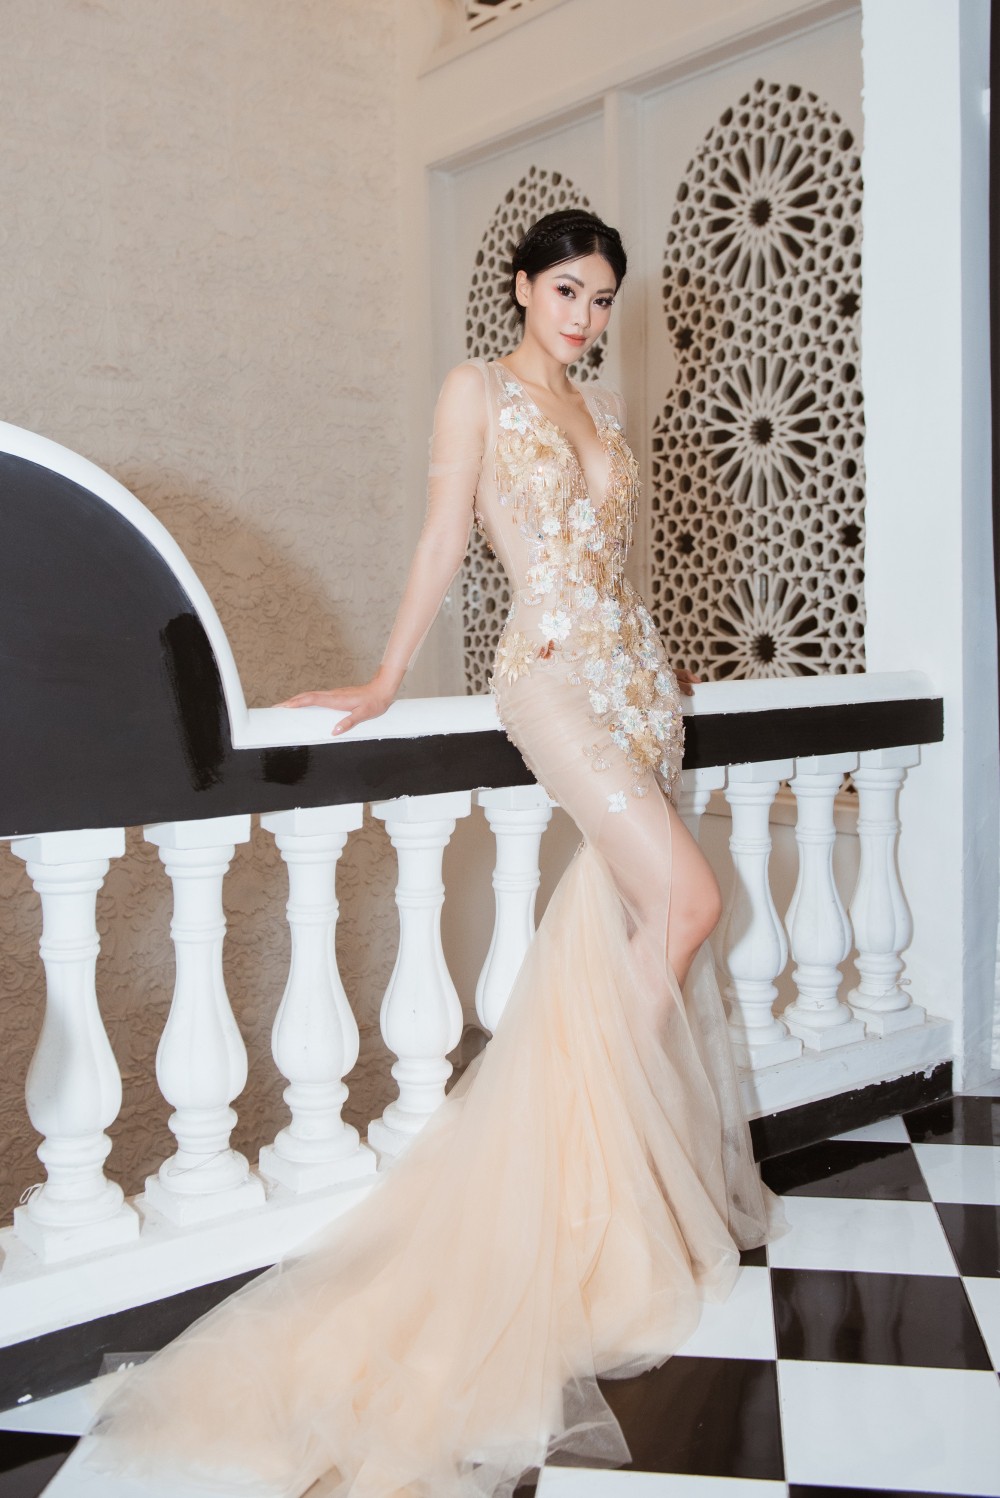 Hoa hậu Phương Khánh diện đầm xuyên thấu, khoe vòng eo 54cm trứ danh  - Ảnh 1.